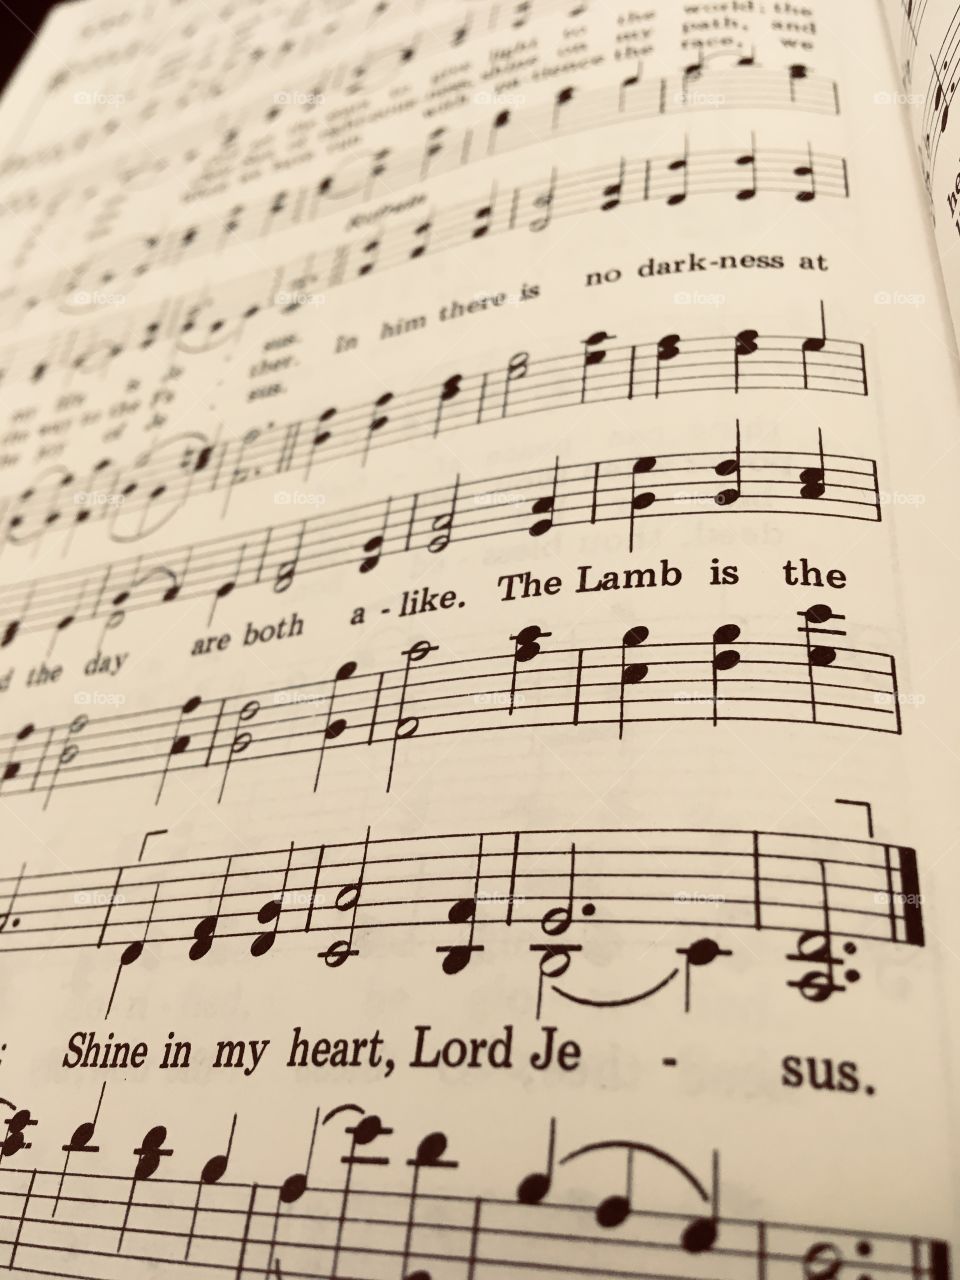 Old hymn